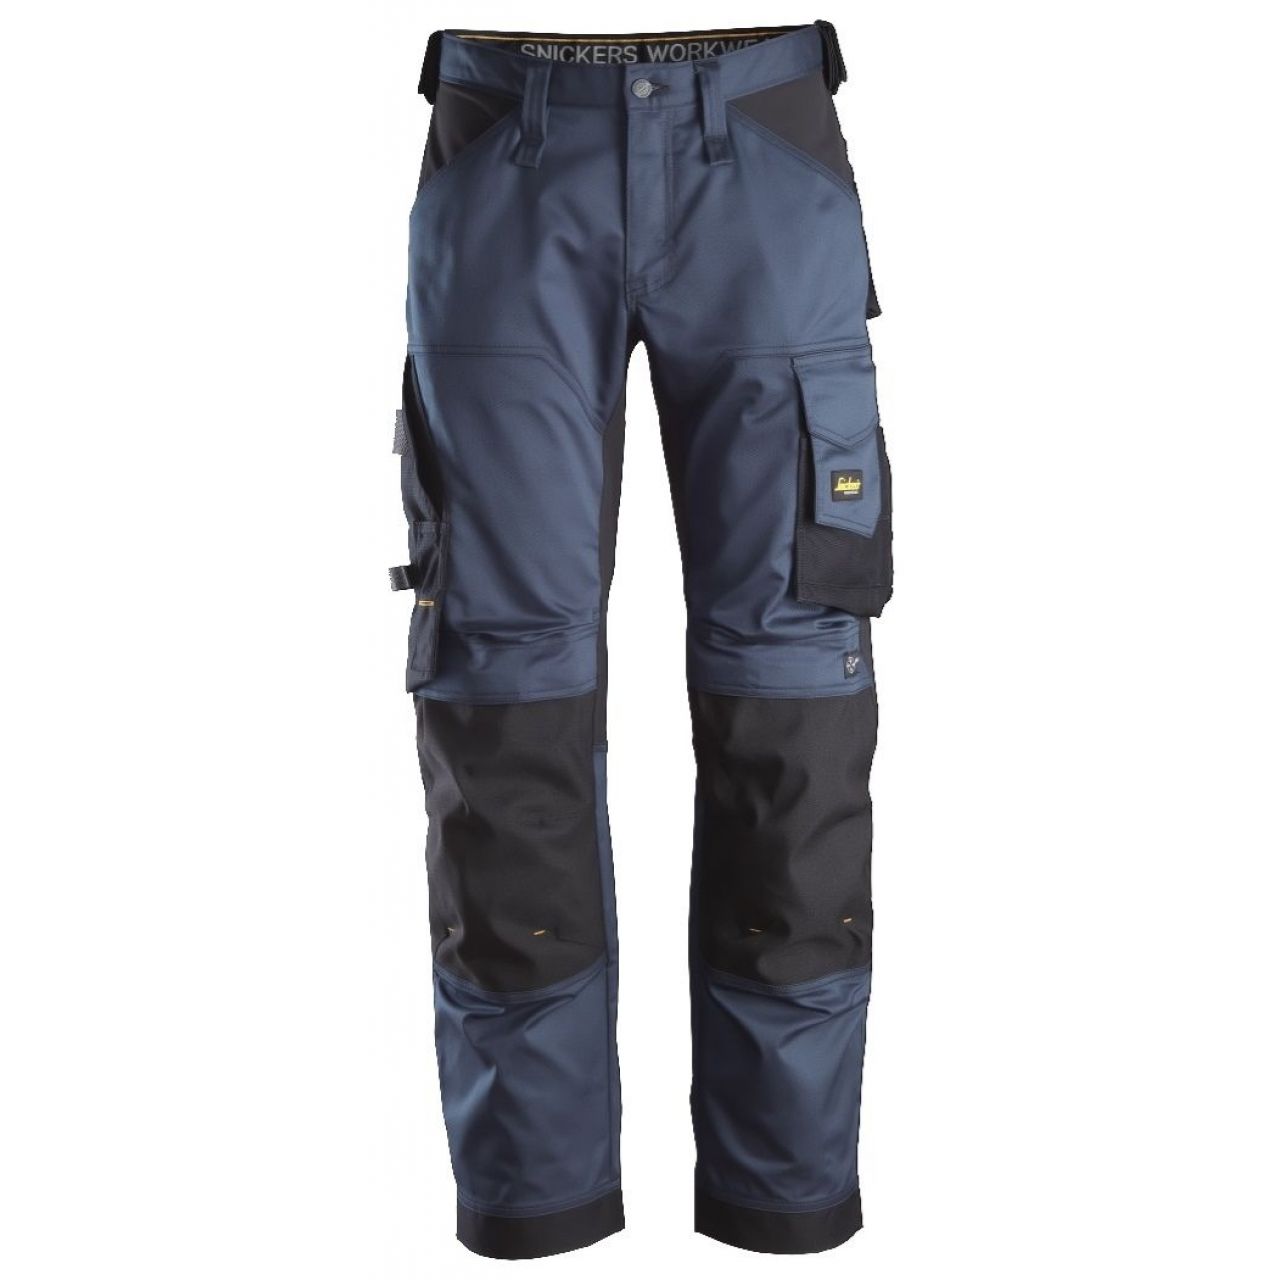 Pantalon elastico ajuste holgado AllroundWork azul marino-negro talla 056